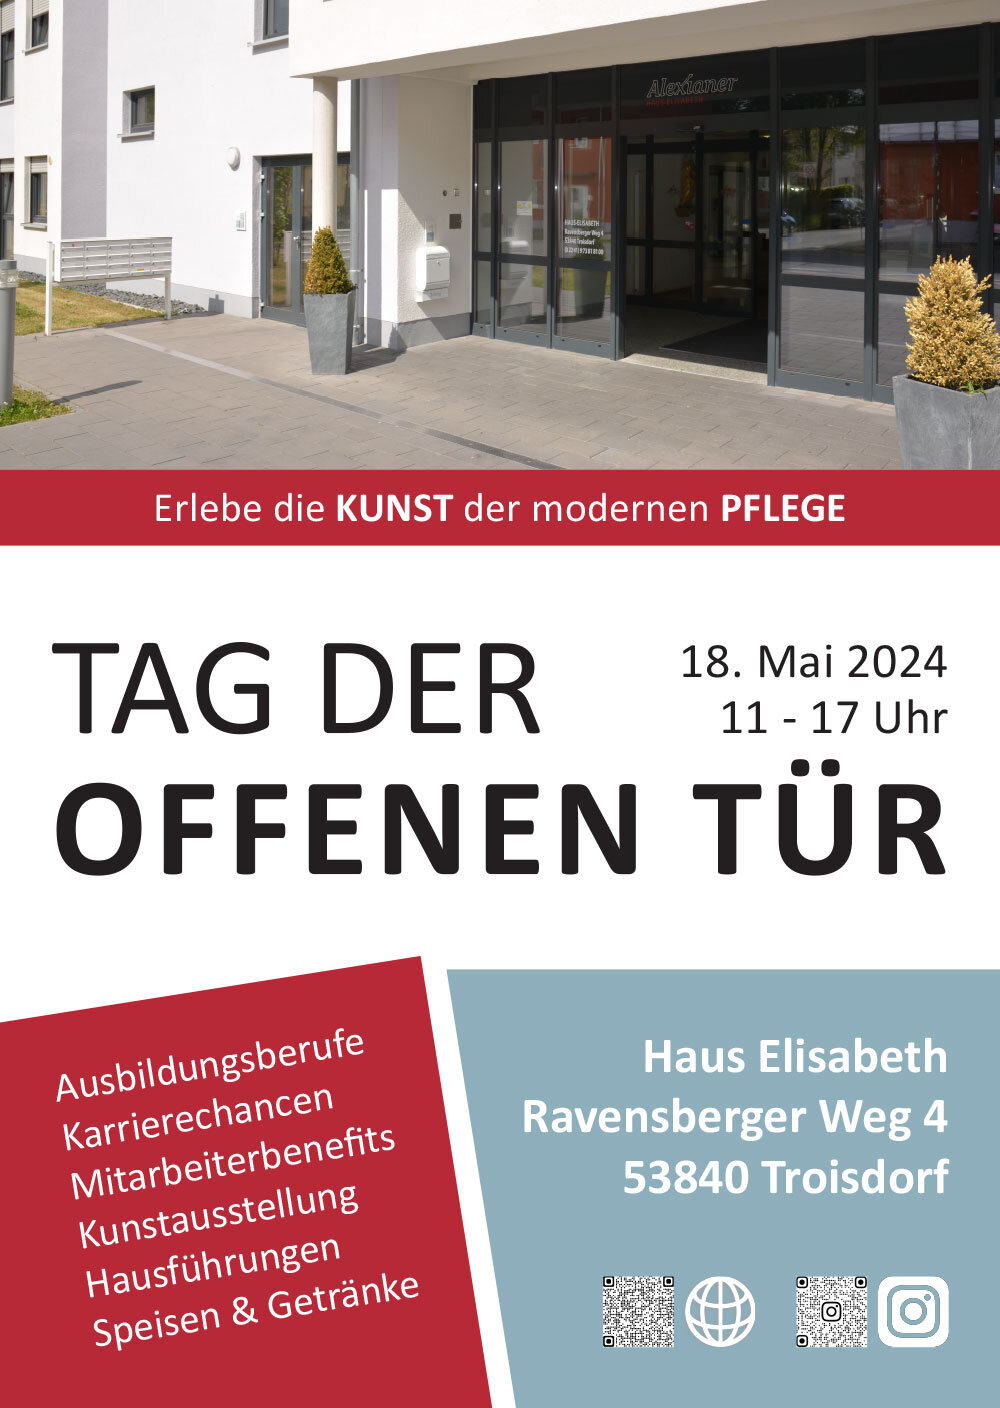 Plakat-Tag-der-offenen-tuerr-Haus-Elisabeth